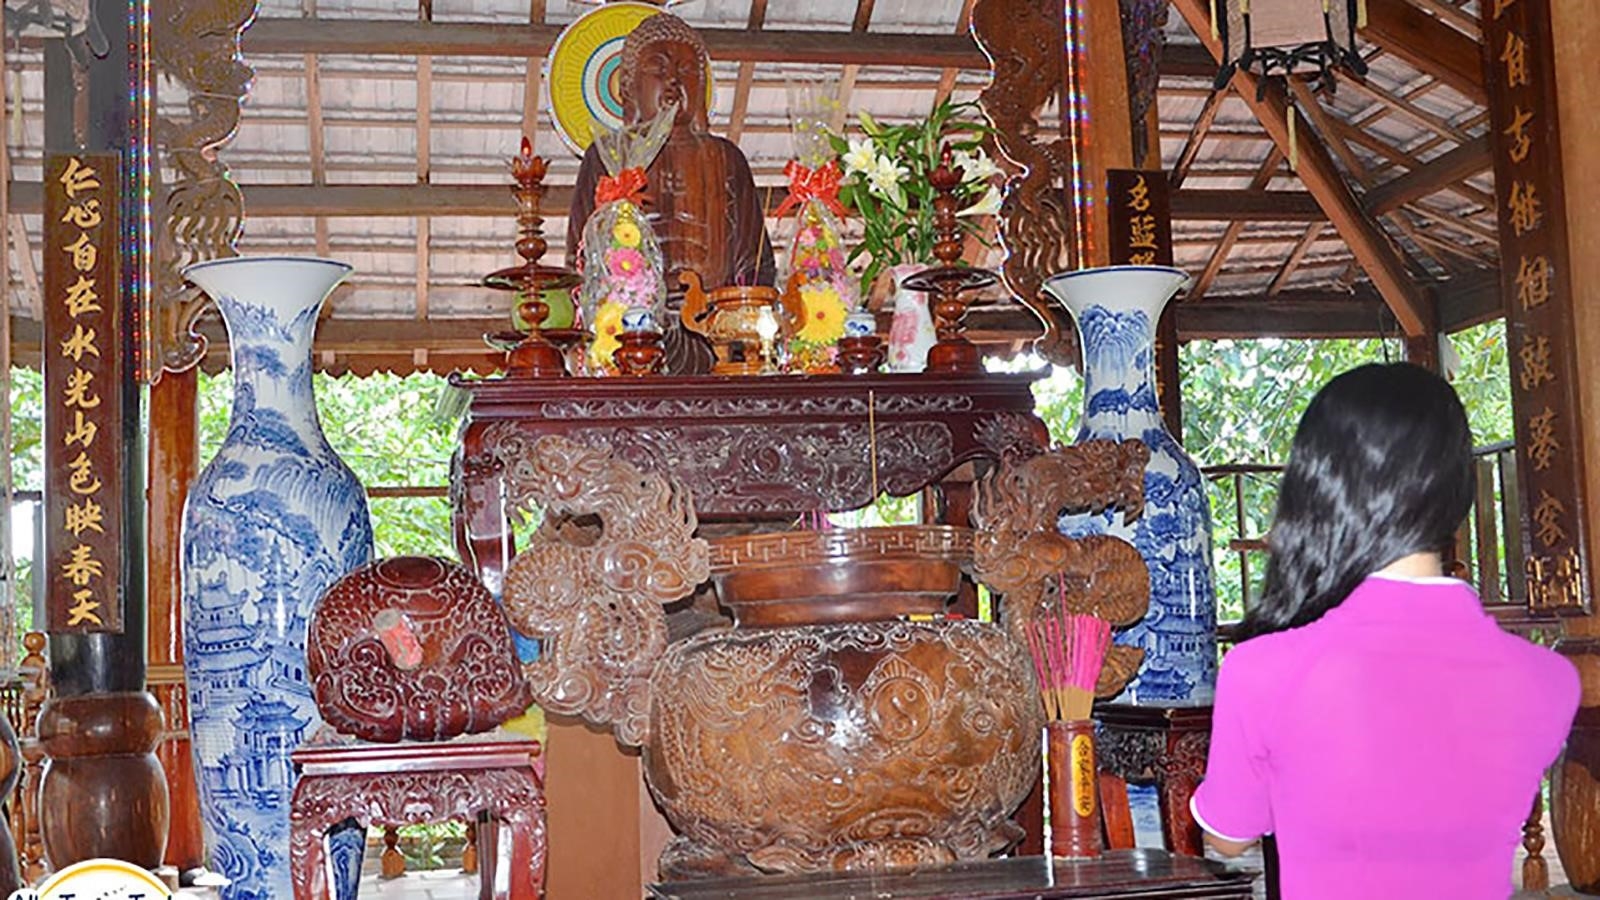 Khu vực 3 là nơi tâm linh Phật Pháp, với đa dạng các ngôi chùa và điểm tham quan linh thiêng, mang đến cho du khách một trải nghiệm tâm linh sâu sắc và tận hưởng không gian yên bình và thanh tịnh.